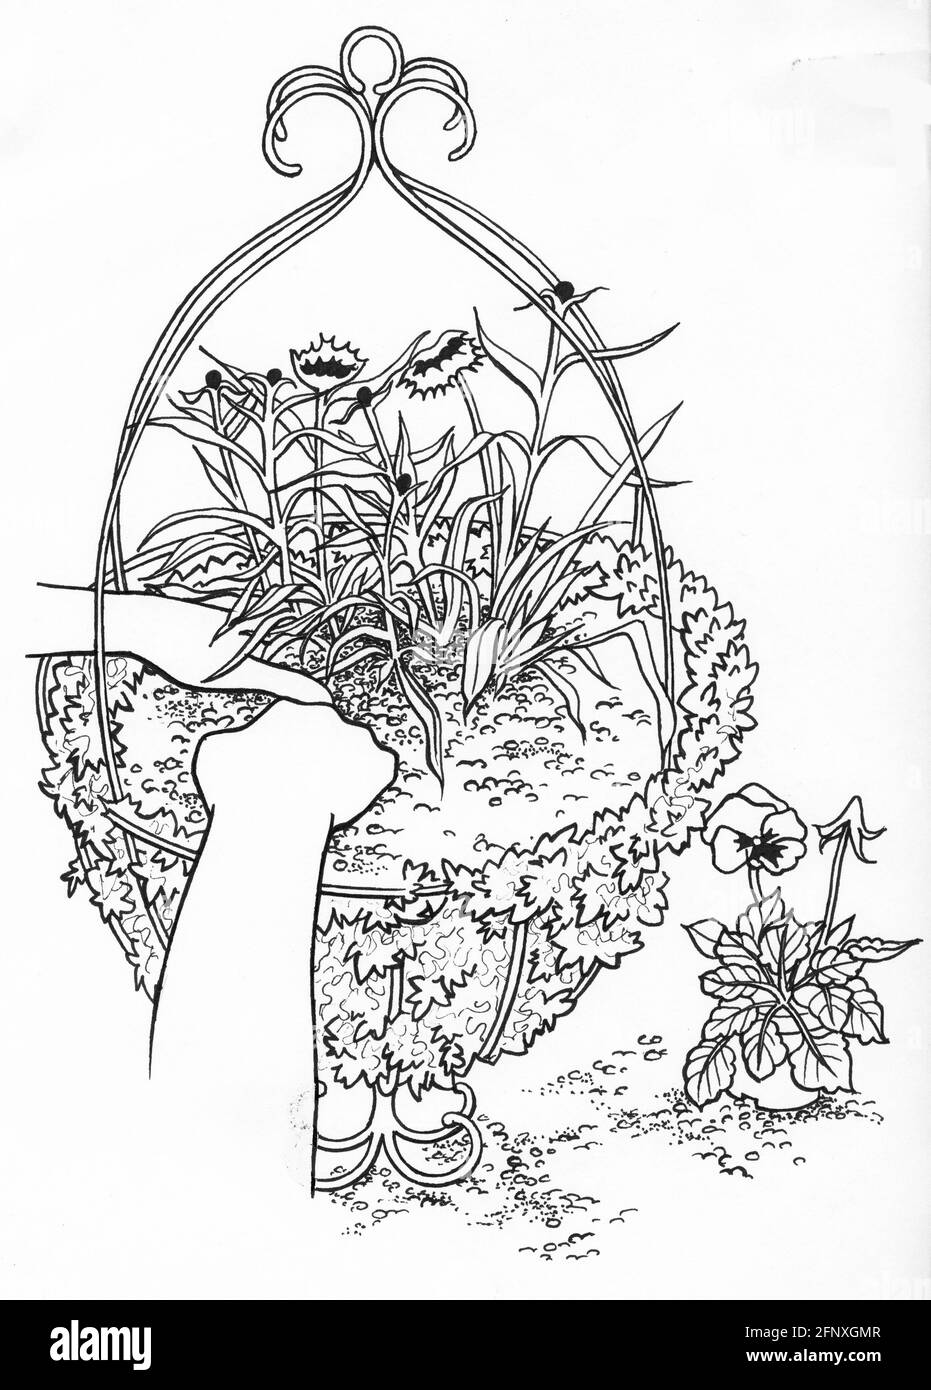 Dessin d'une personne plantant un panier suspendu avec doublure en mousse sphaigne Banque D'Images